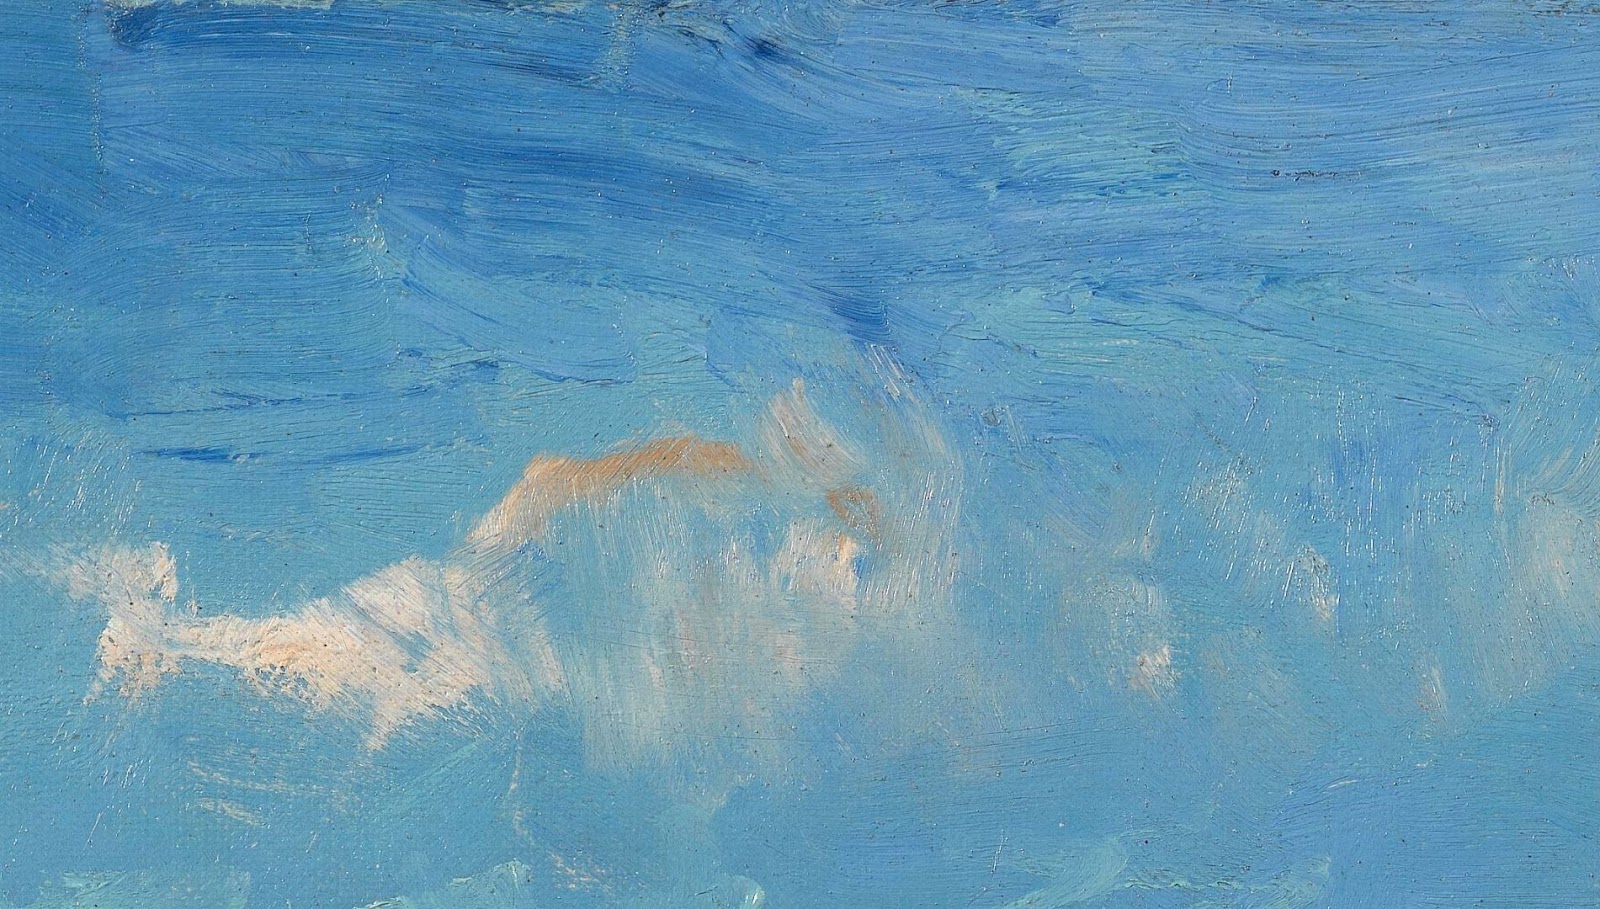 Il mare a Les Saintes - Maries de la Mer, quadro di Van Gogh